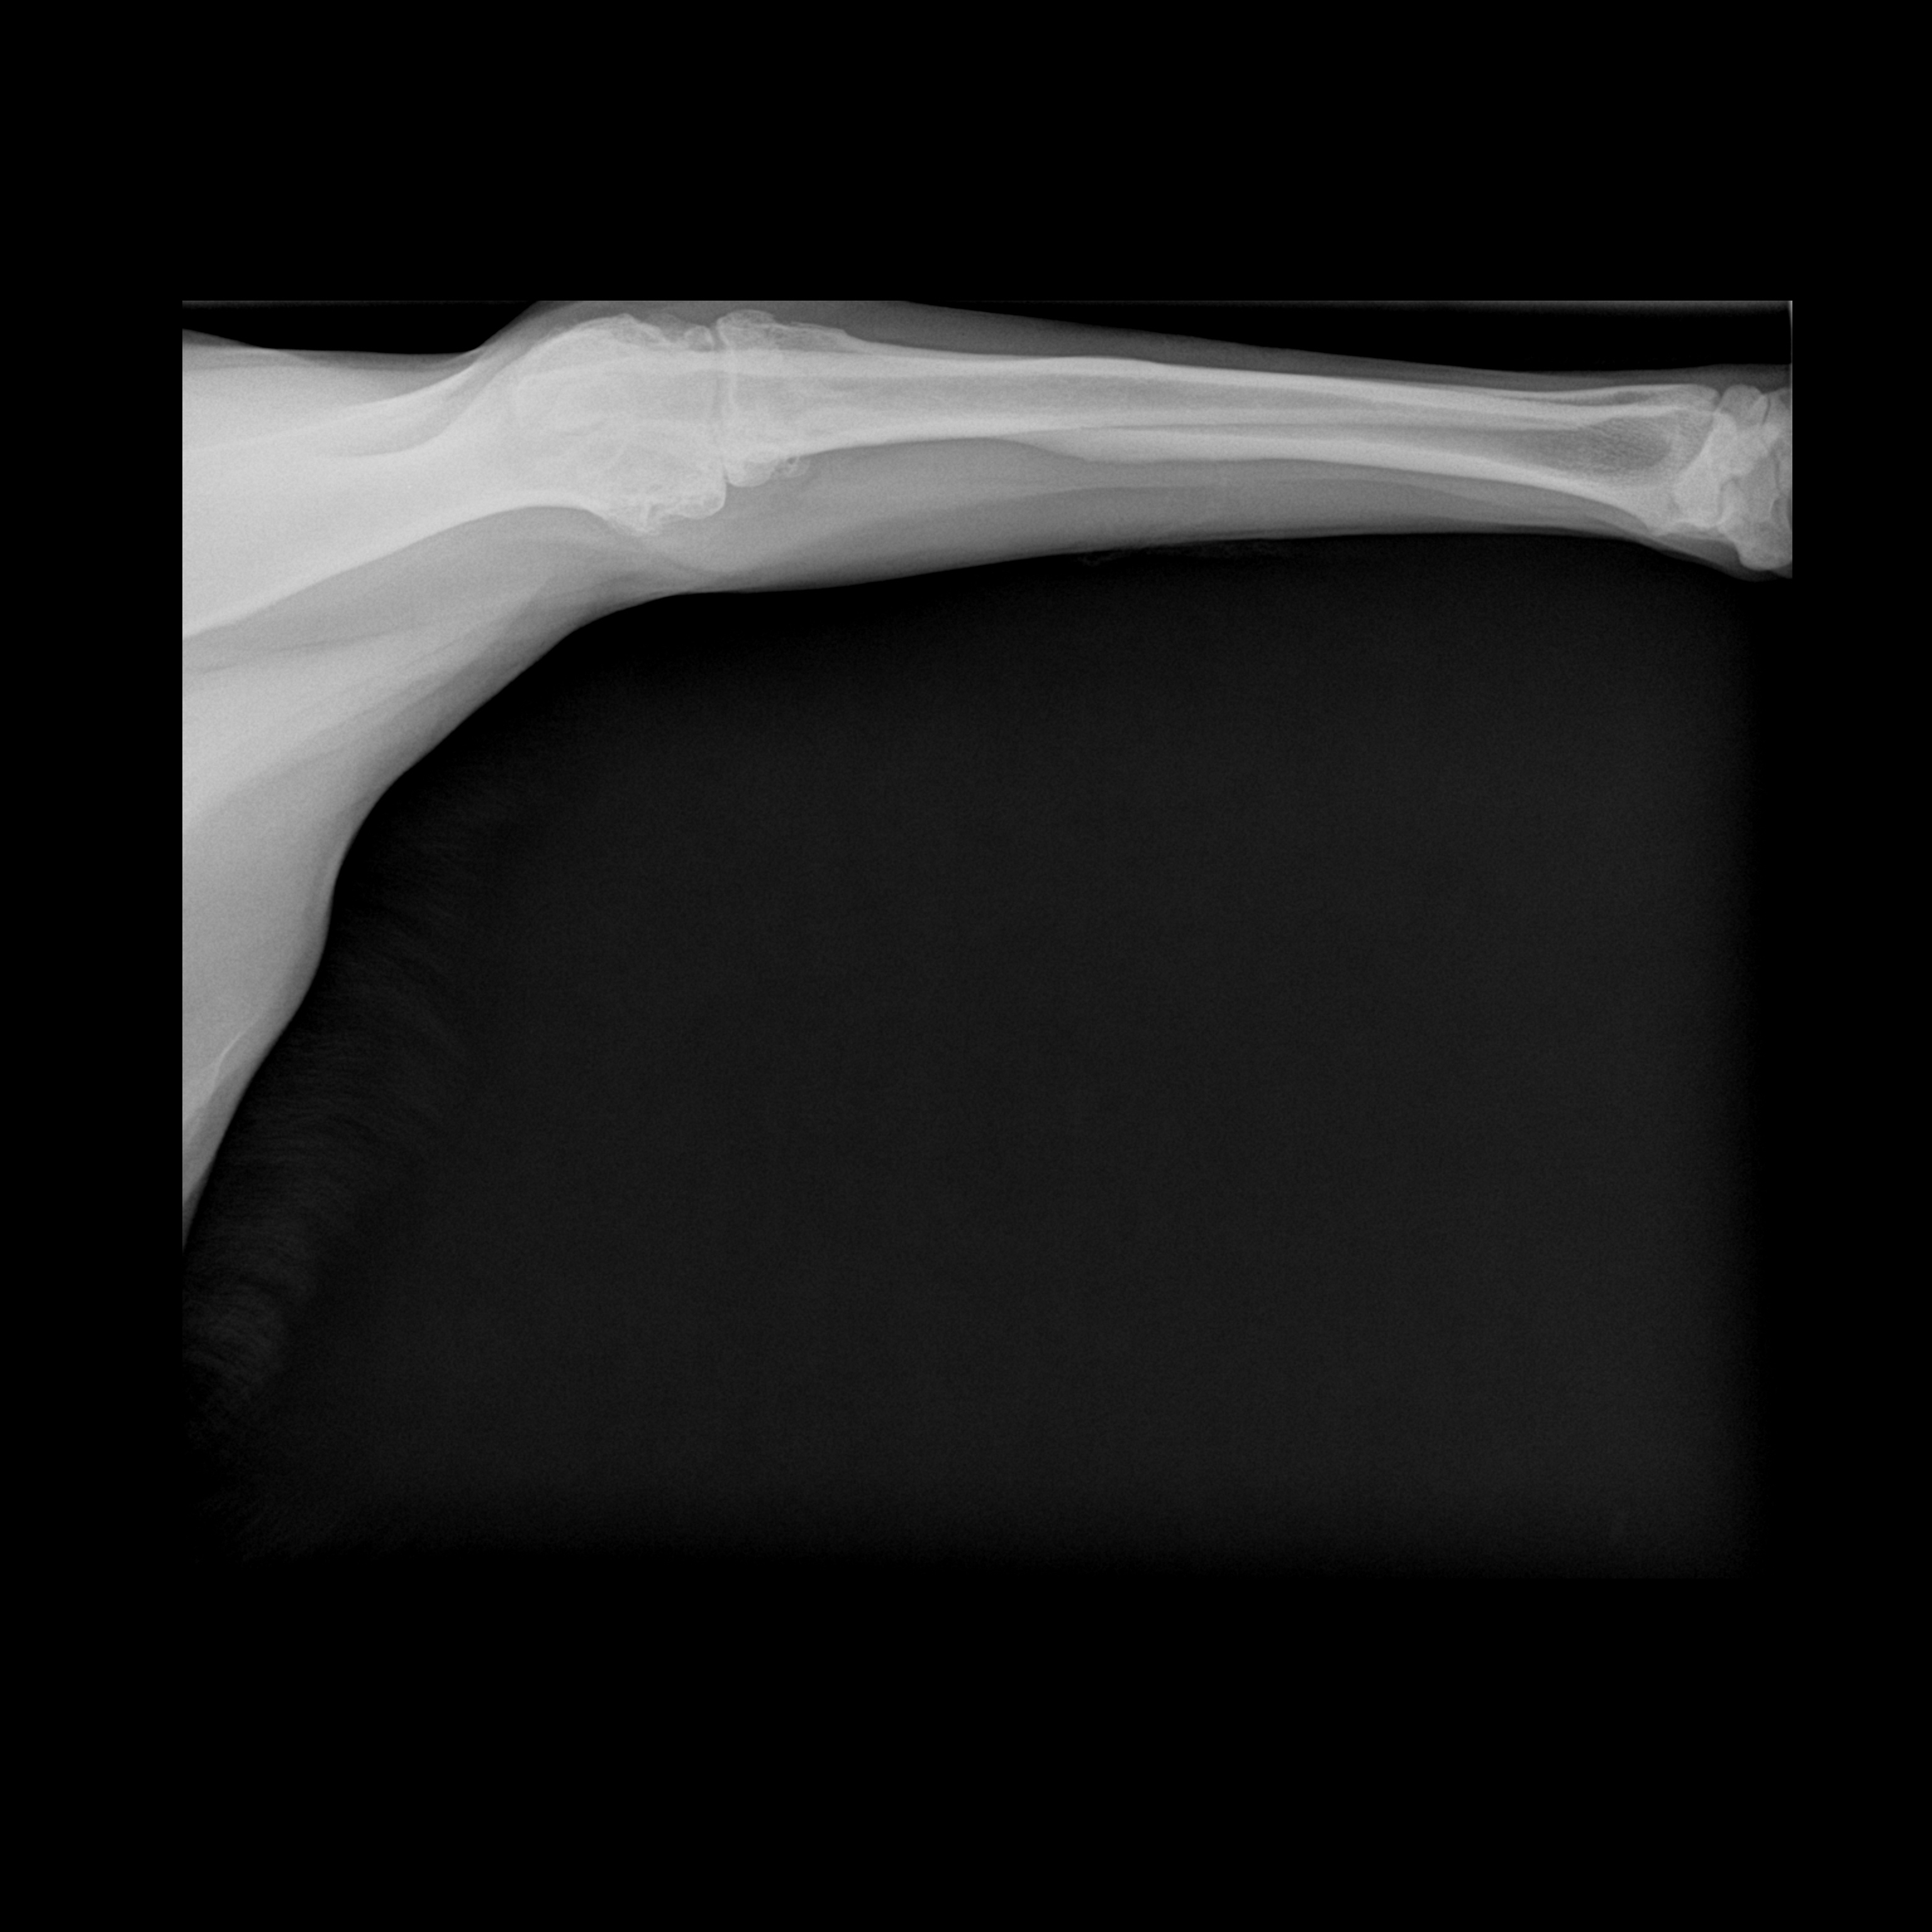 Elbow radiograph